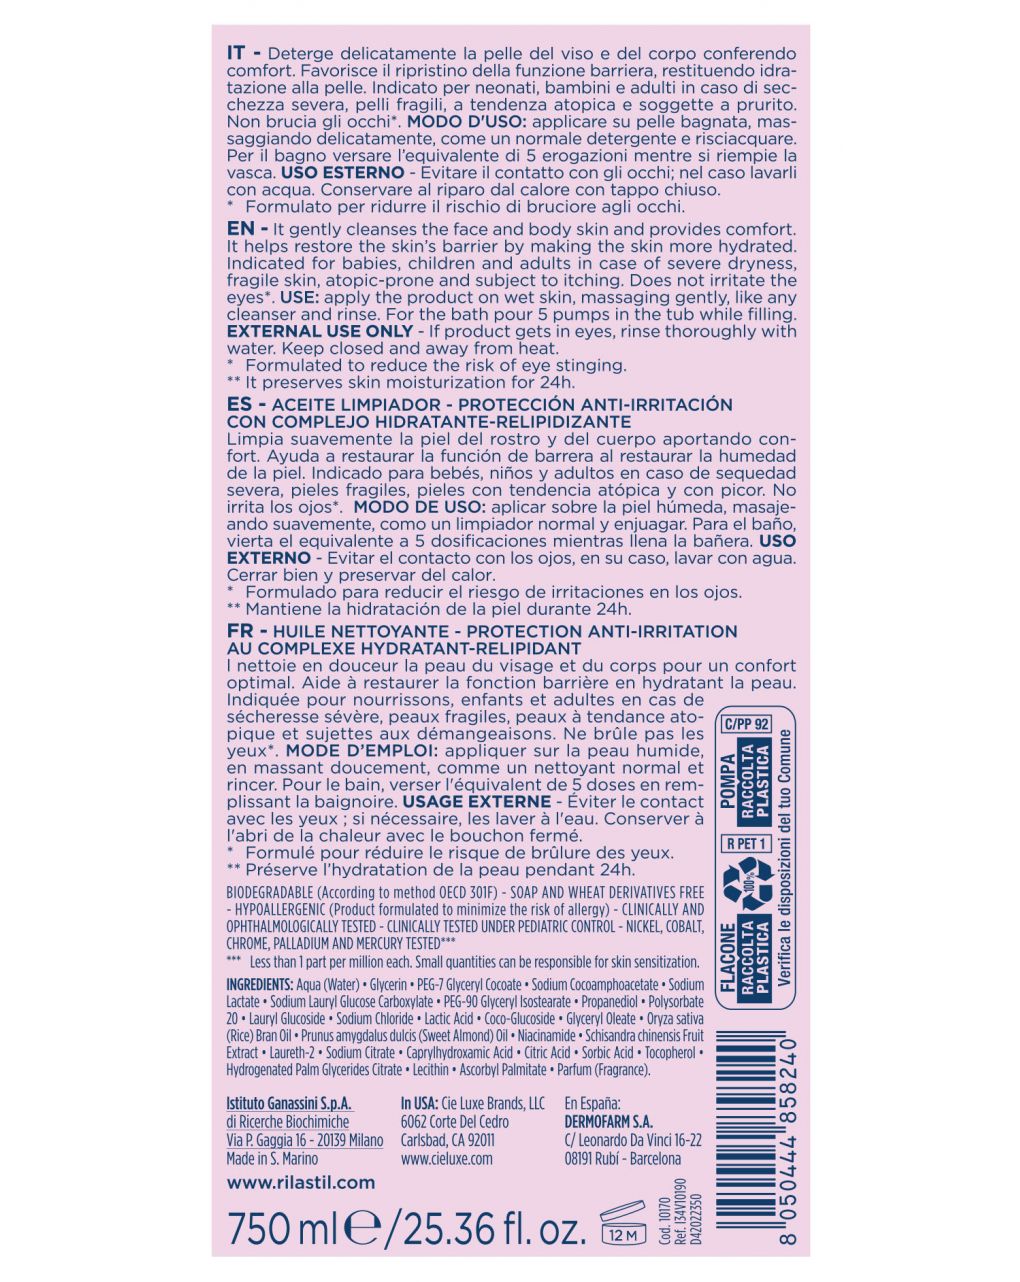 Olio detergente xerolact 750 ml - rilastil - Rilastil